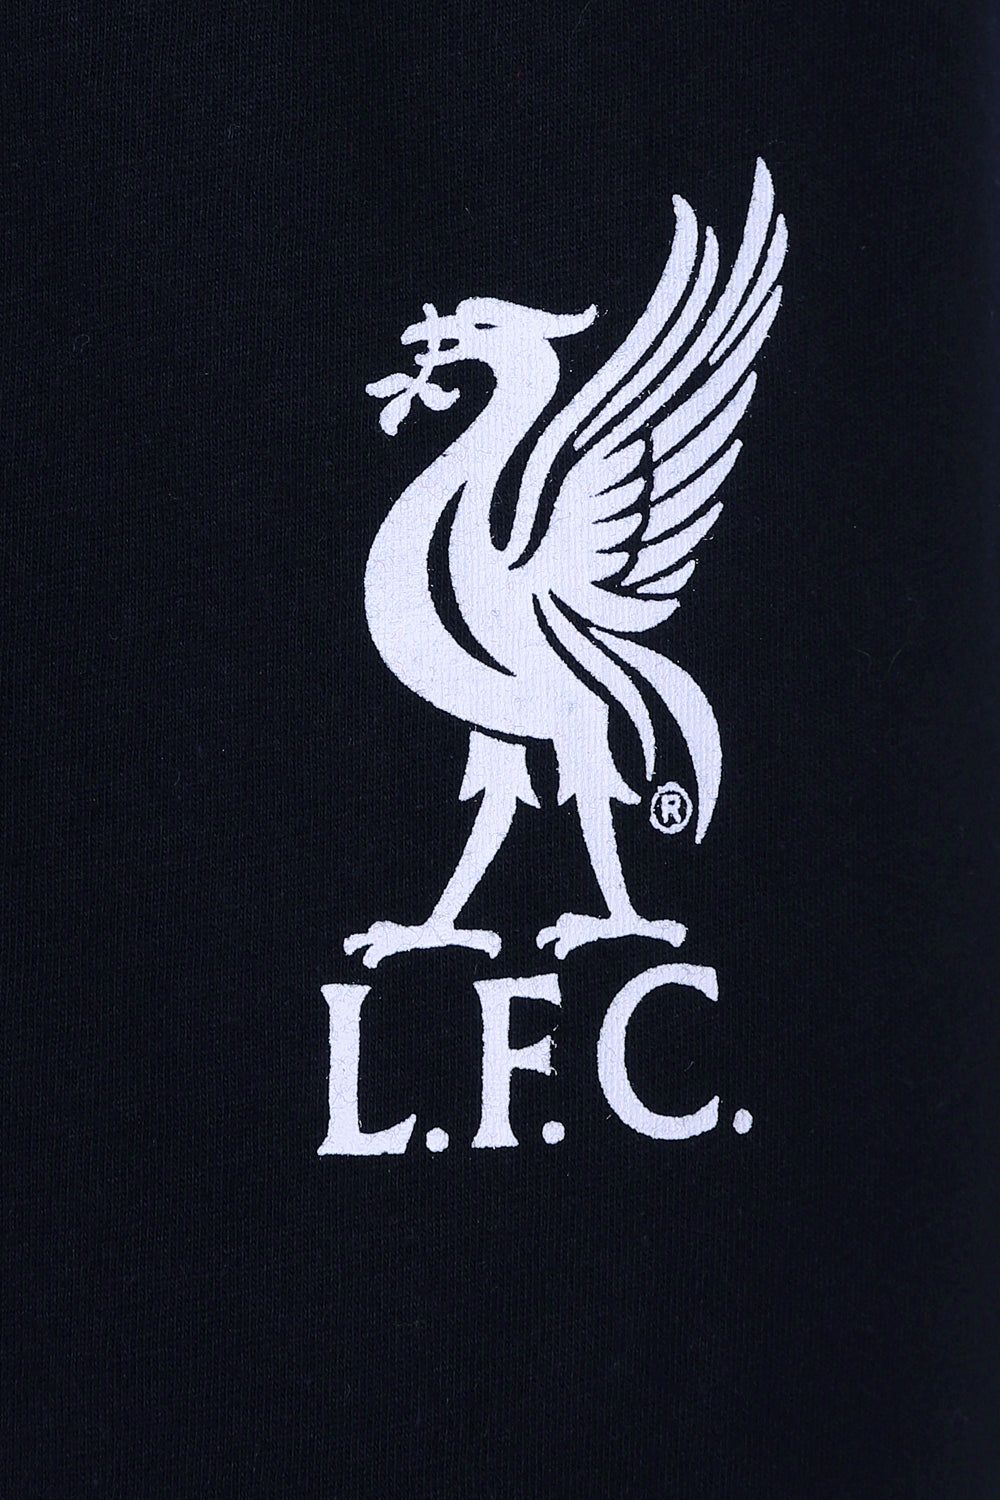 Mens Official Liverpool Football Club Long Pyjamas - Pyjamas.com